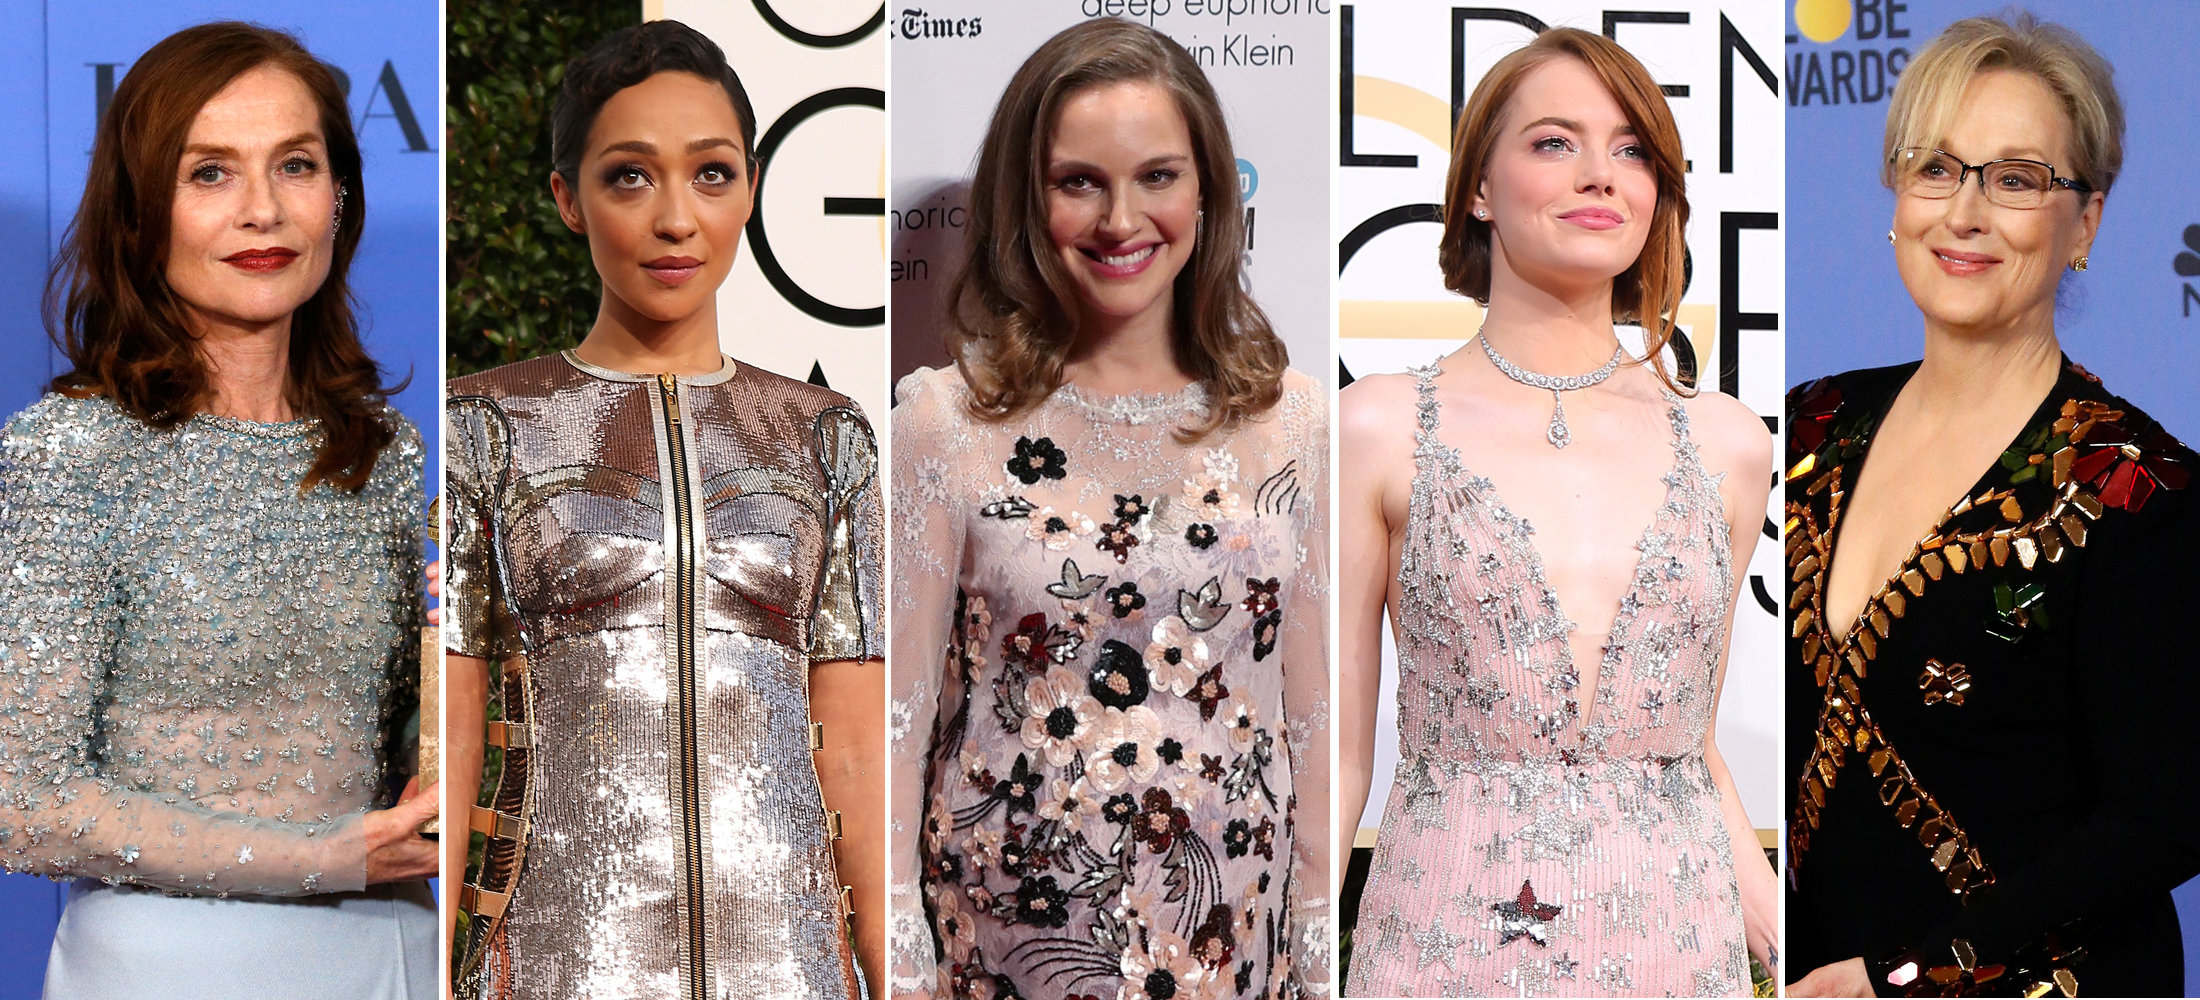 Foto de Archivo de Reuters: Las nominadas a Mejor Actriz en la 89va entrega de los Premios Oscar: Isabelle Huppert, Ruth Negga, Nalie Portman, Emma Stone and Meryl Streep.